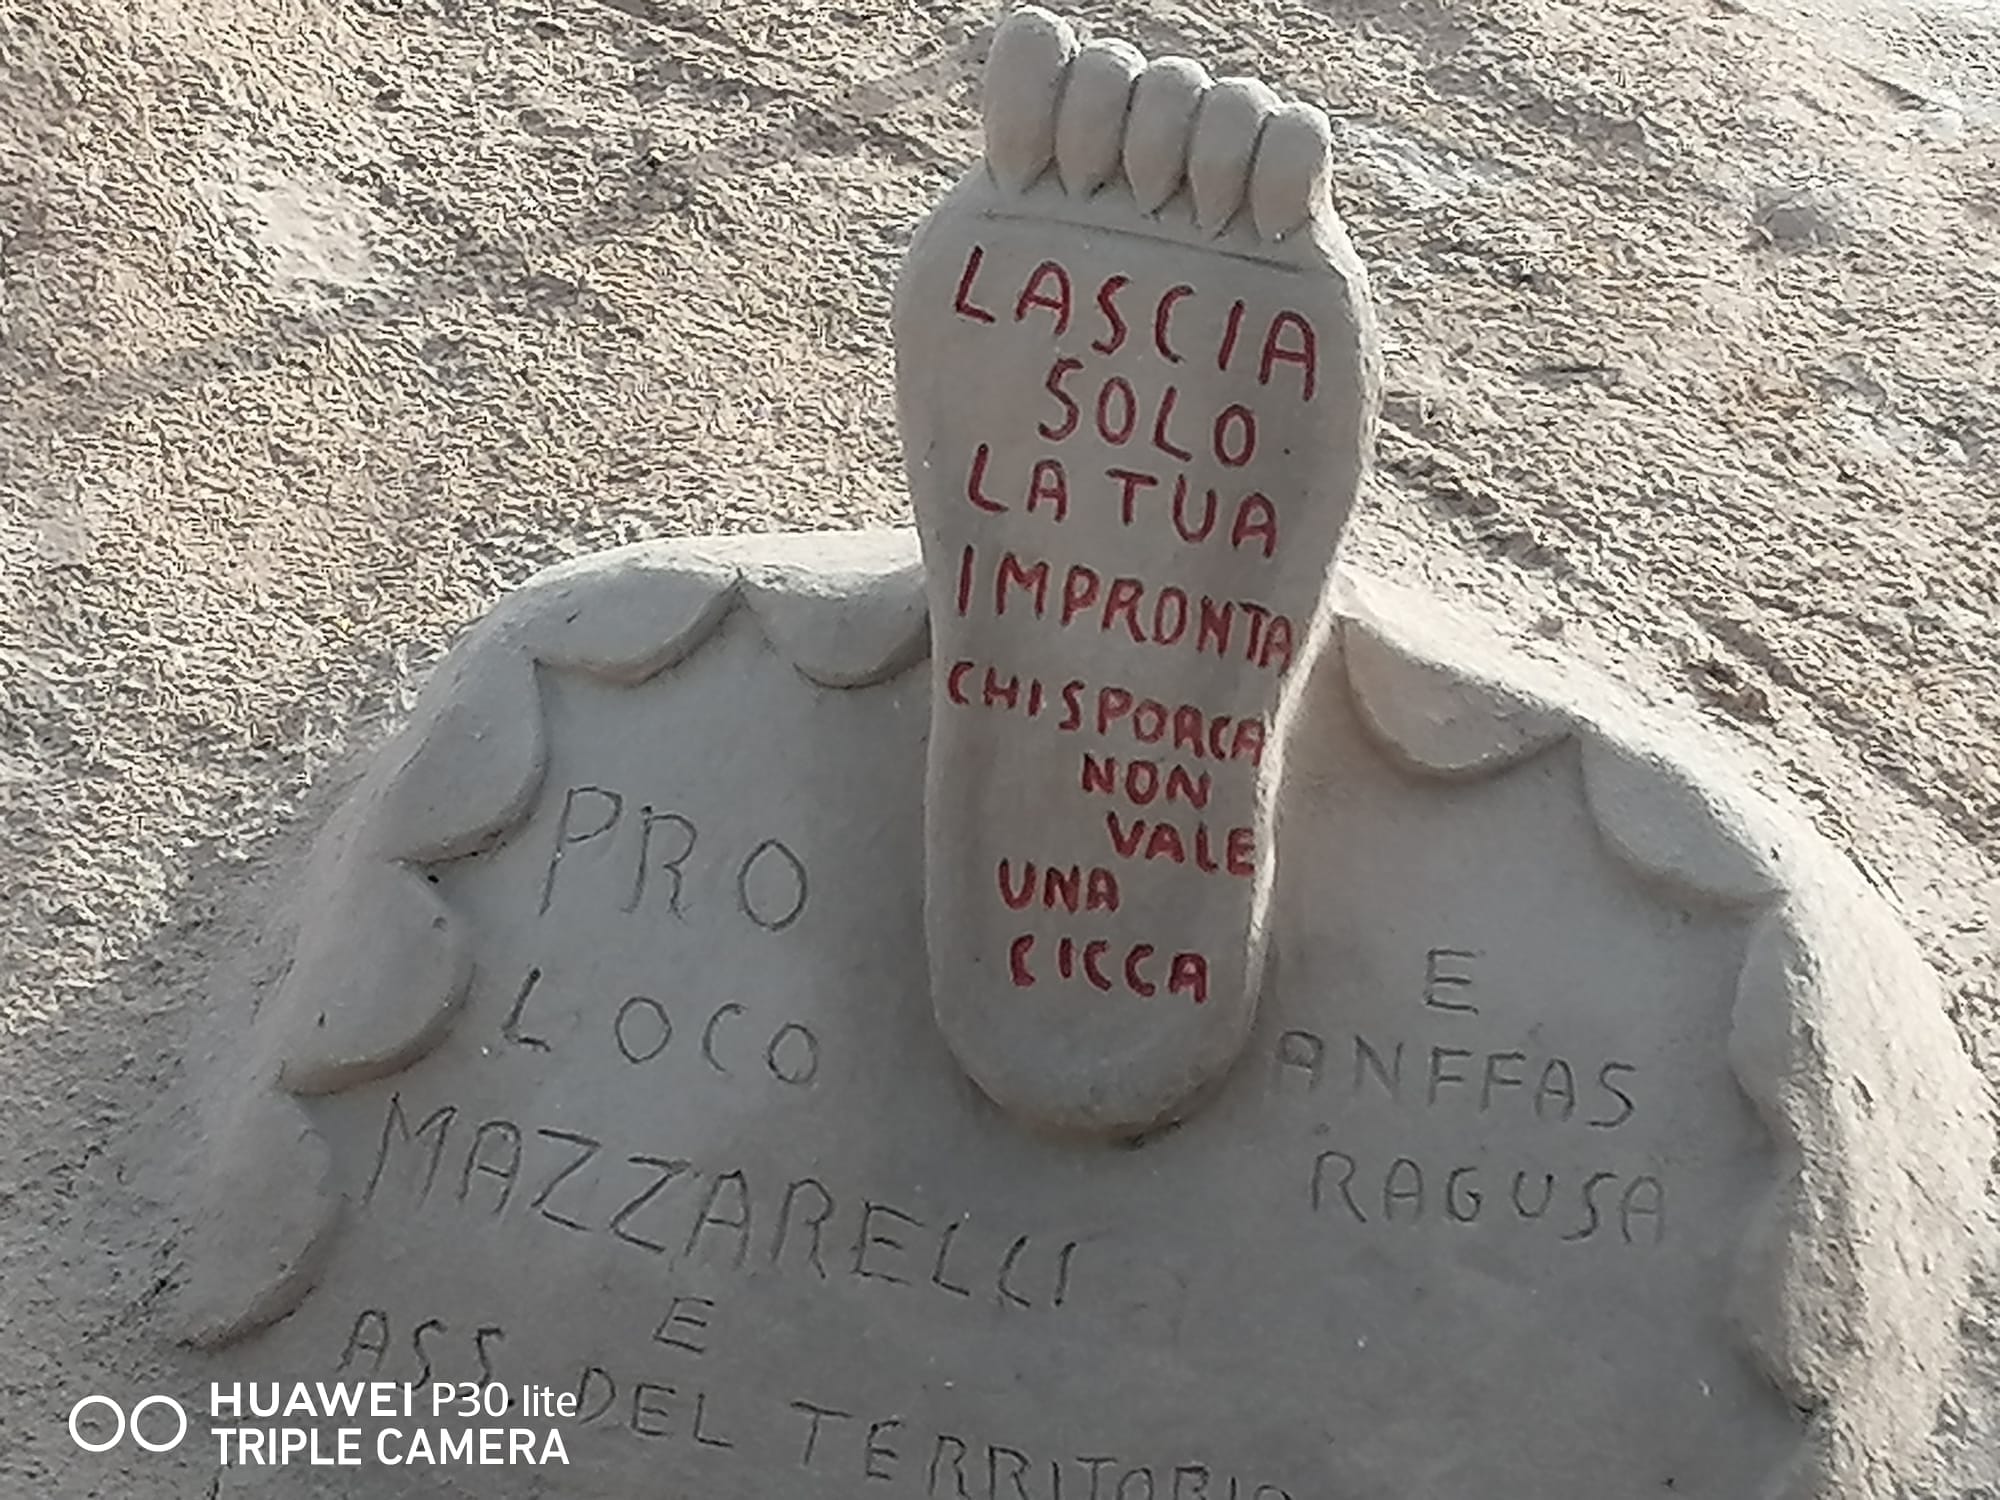 Marina di Ragusa, “Chi sporca non vale una cicca": campagna di sensibilizzazione dell'Anffas 